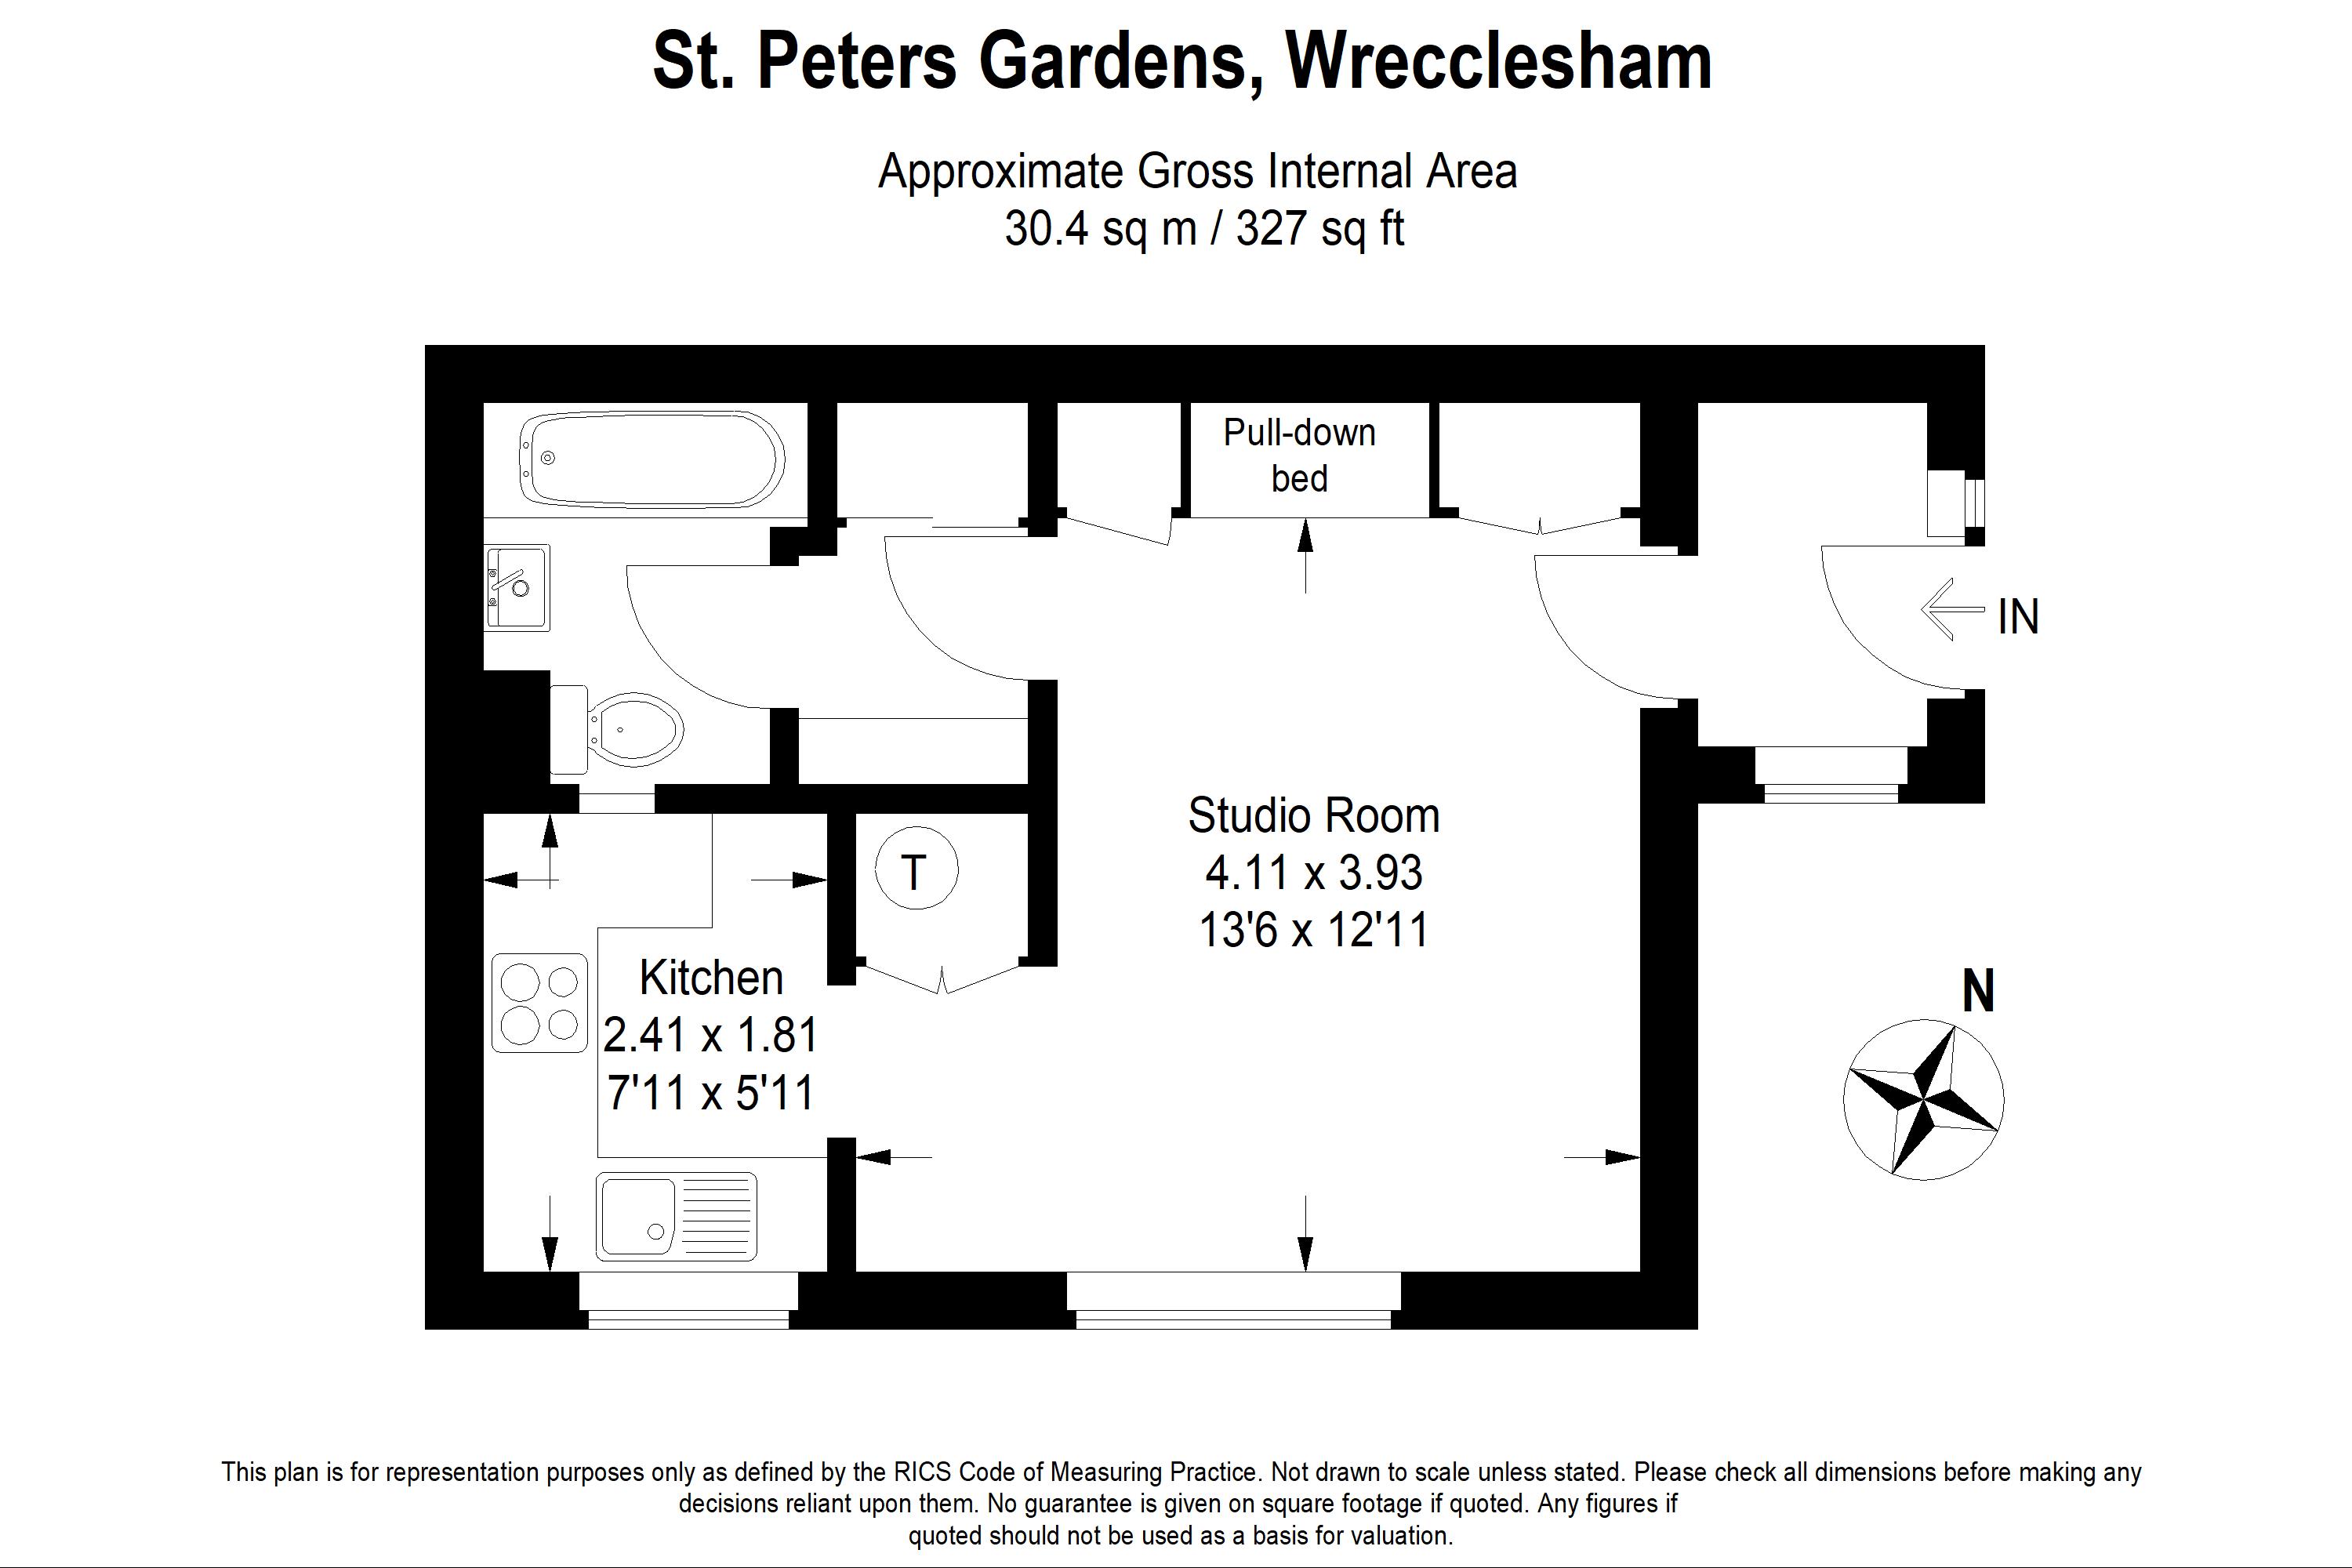 St. Peters Gardens Wrecclesham